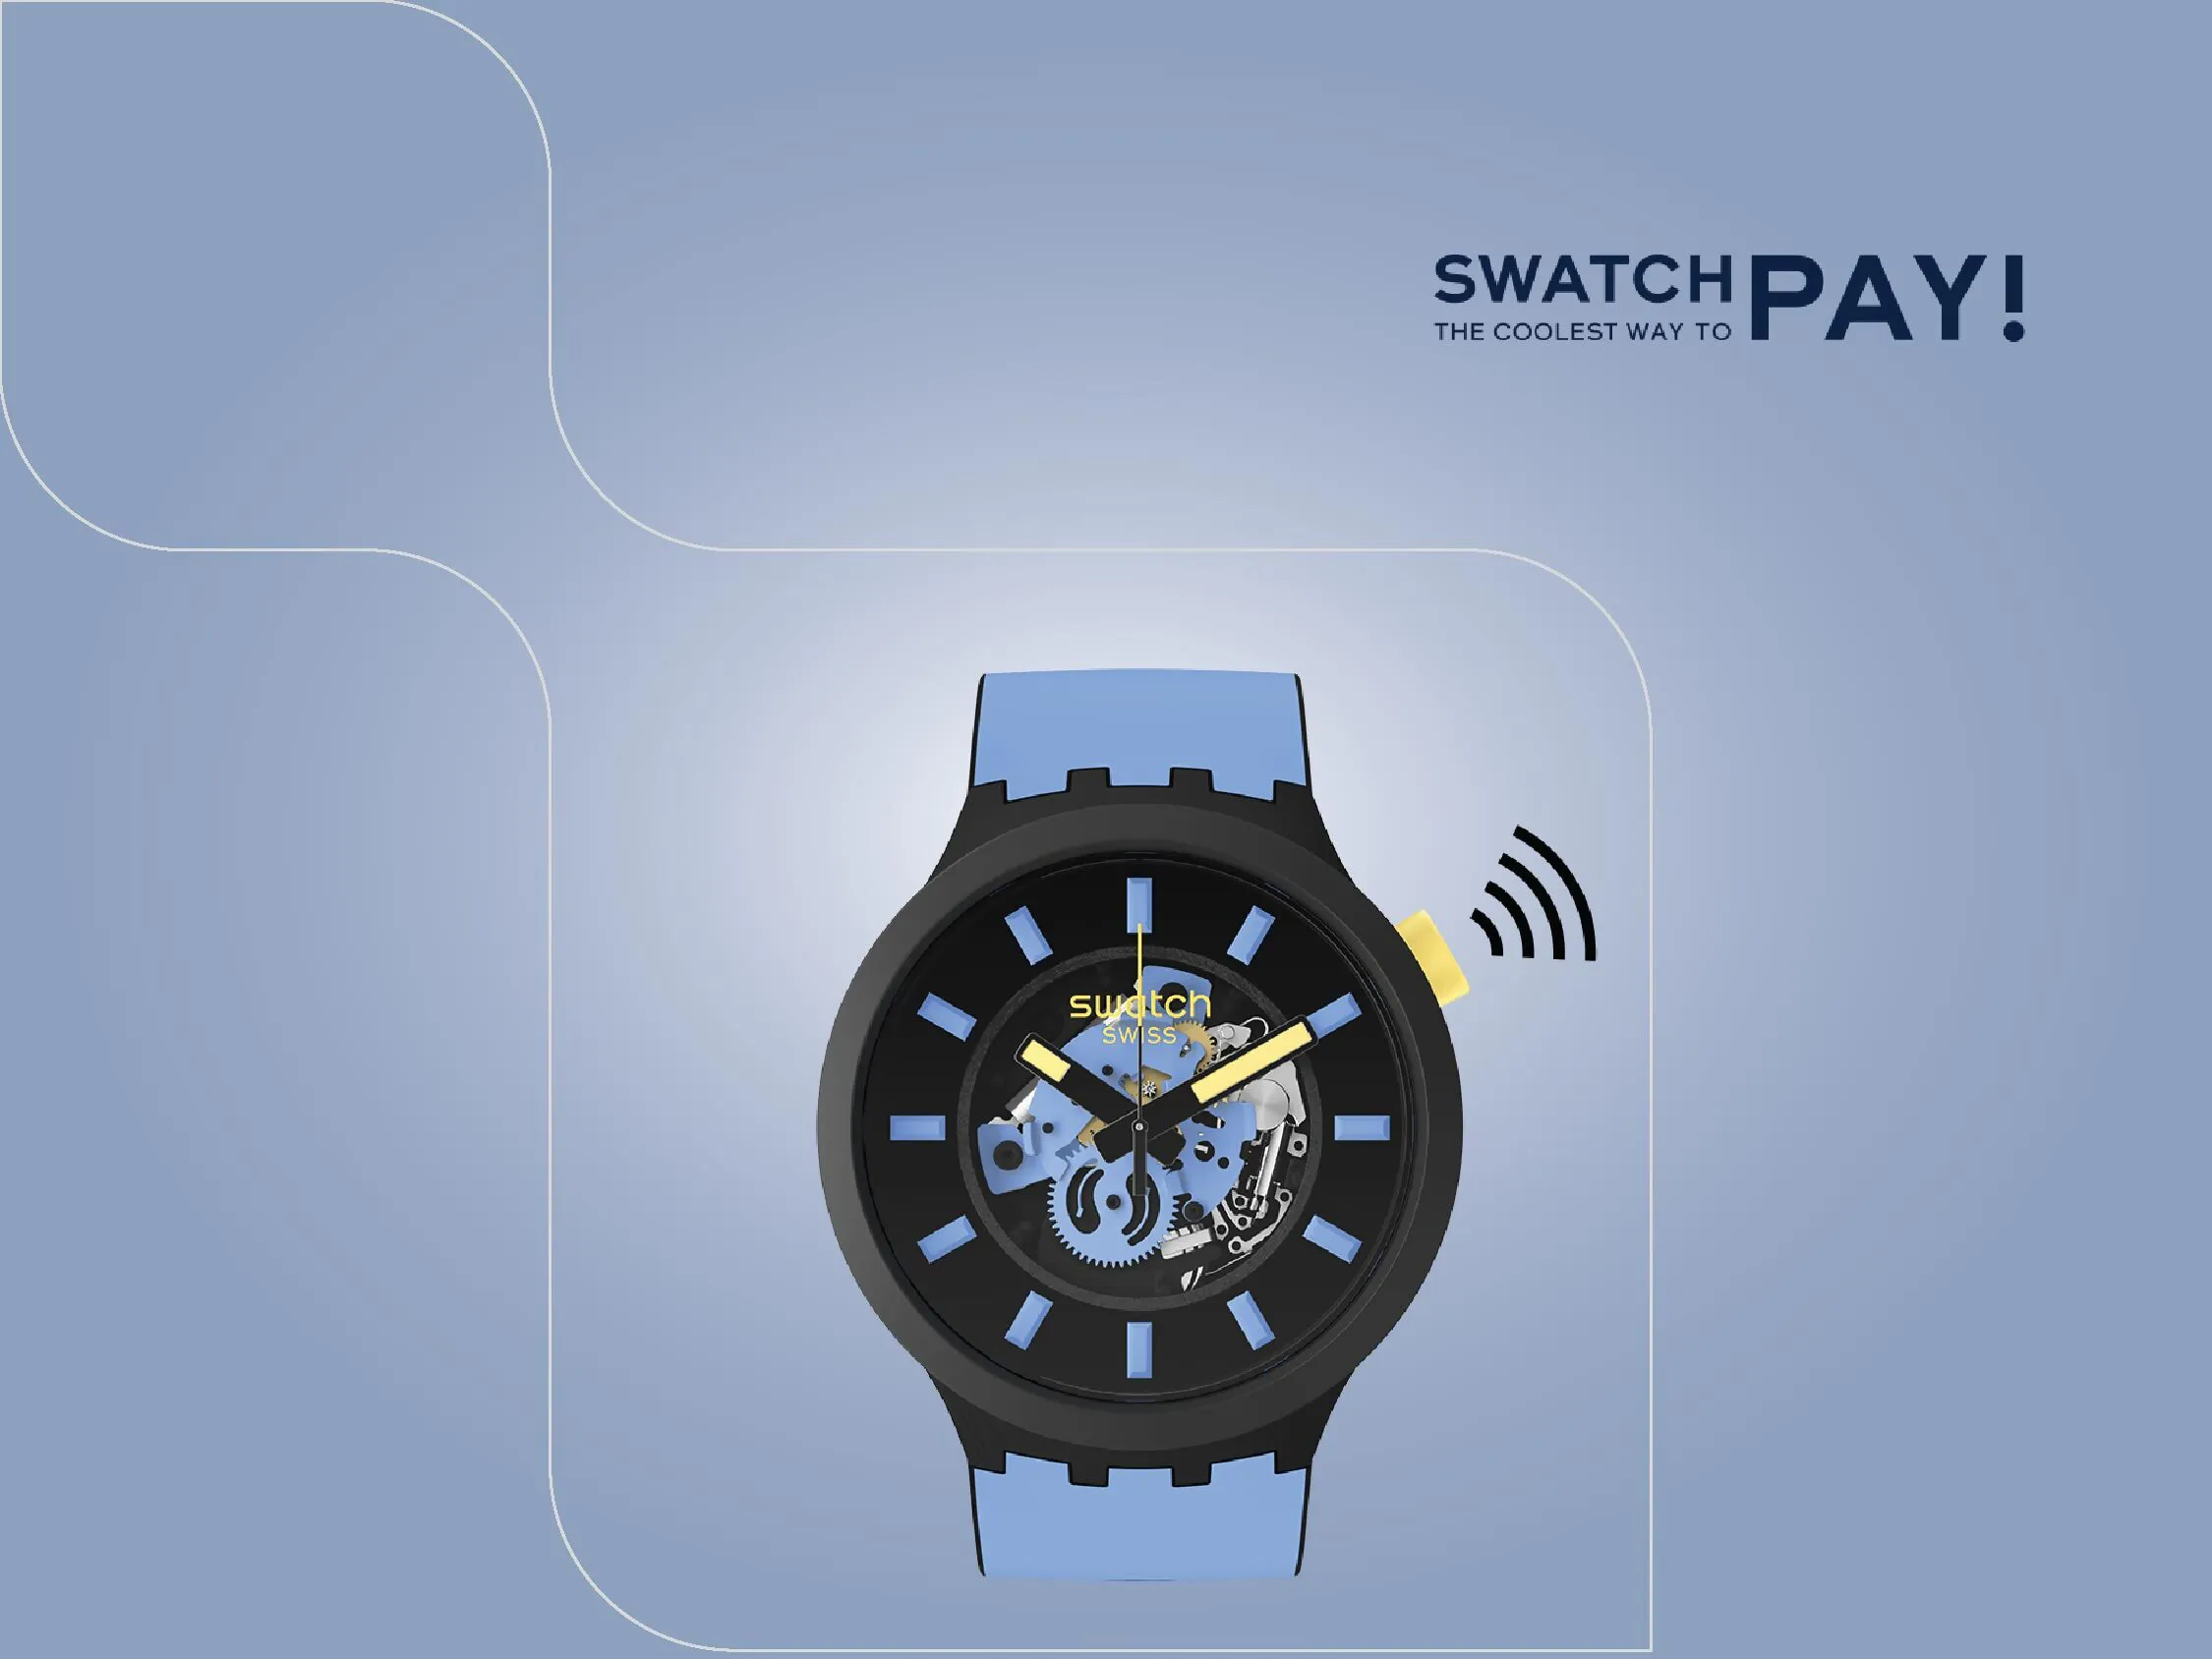 خدمة الدفع SwatchPay لساعات Swatch